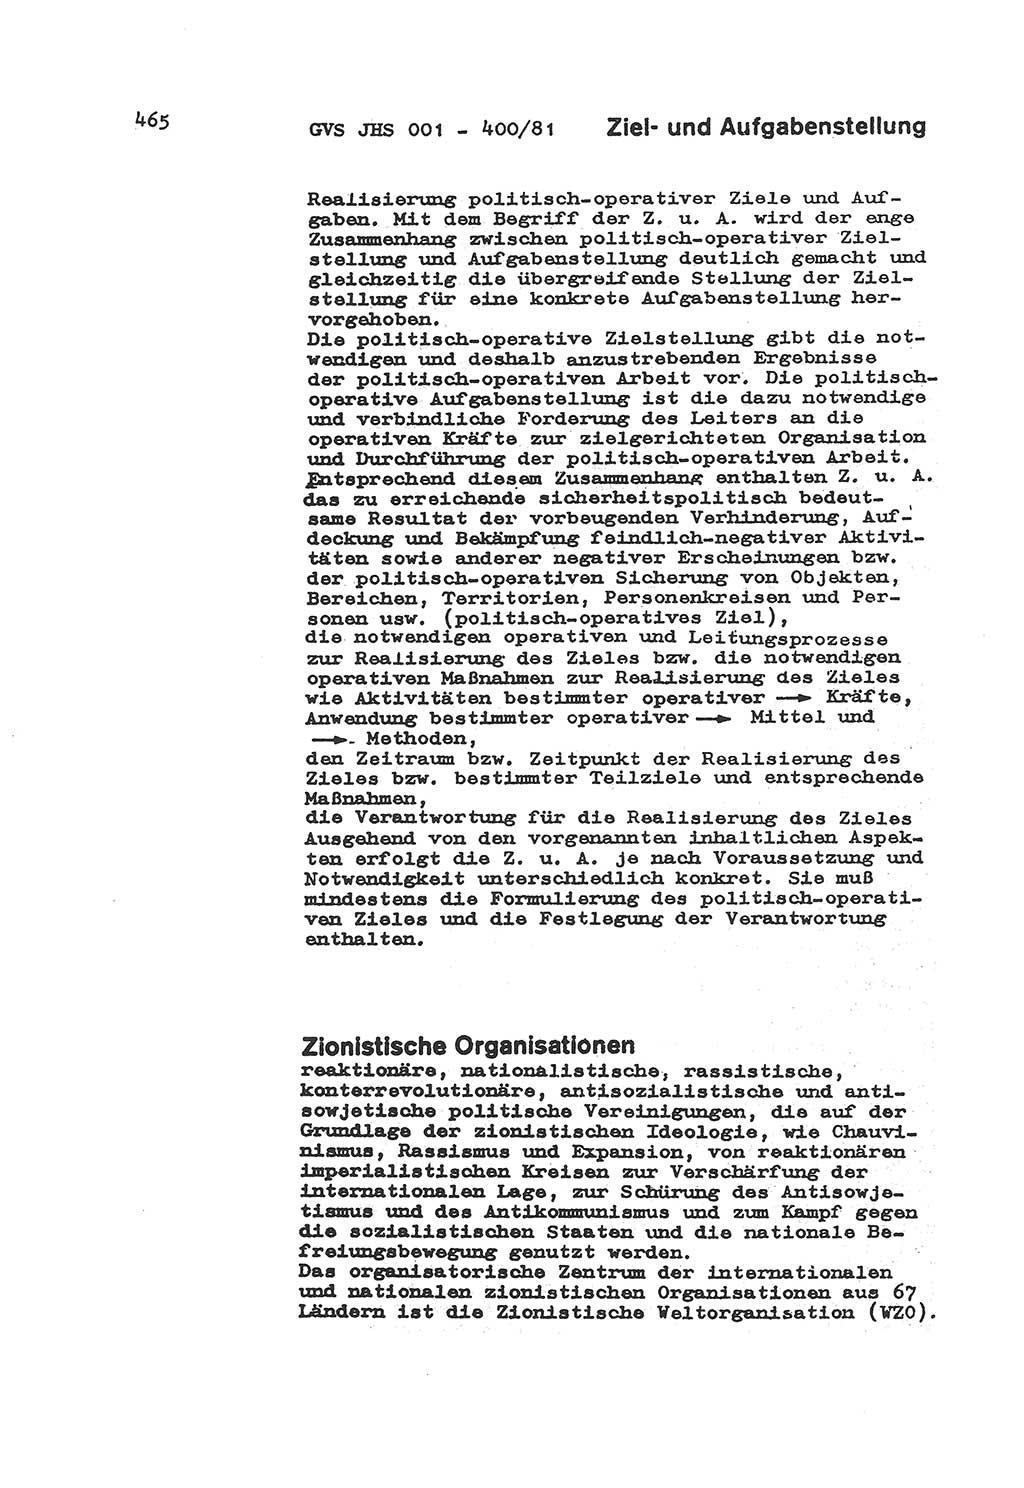 Wörterbuch der politisch-operativen Arbeit, Ministerium für Staatssicherheit (MfS) [Deutsche Demokratische Republik (DDR)], Juristische Hochschule (JHS), Geheime Verschlußsache (GVS) o001-400/81, Potsdam 1985, Blatt 465 (Wb. pol.-op. Arb. MfS DDR JHS GVS o001-400/81 1985, Bl. 465)